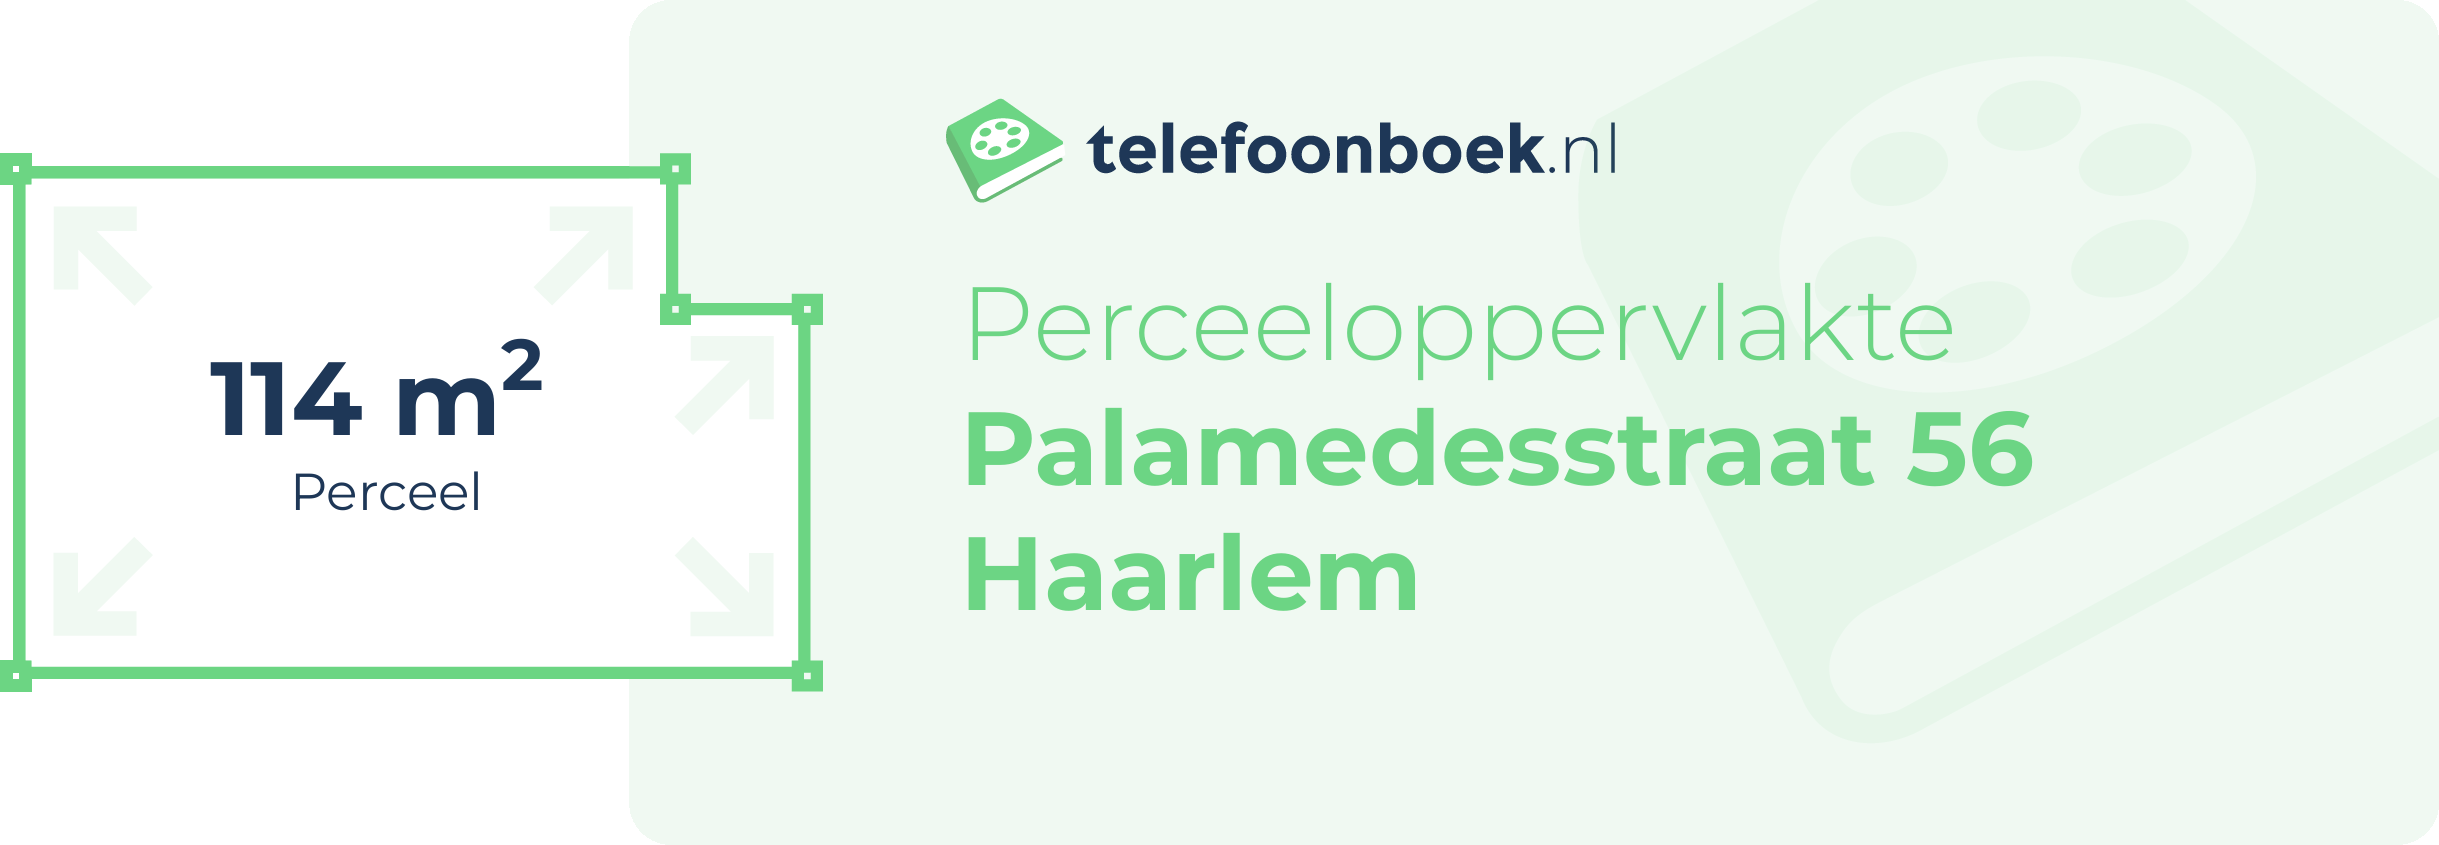 Perceeloppervlakte Palamedesstraat 56 Haarlem